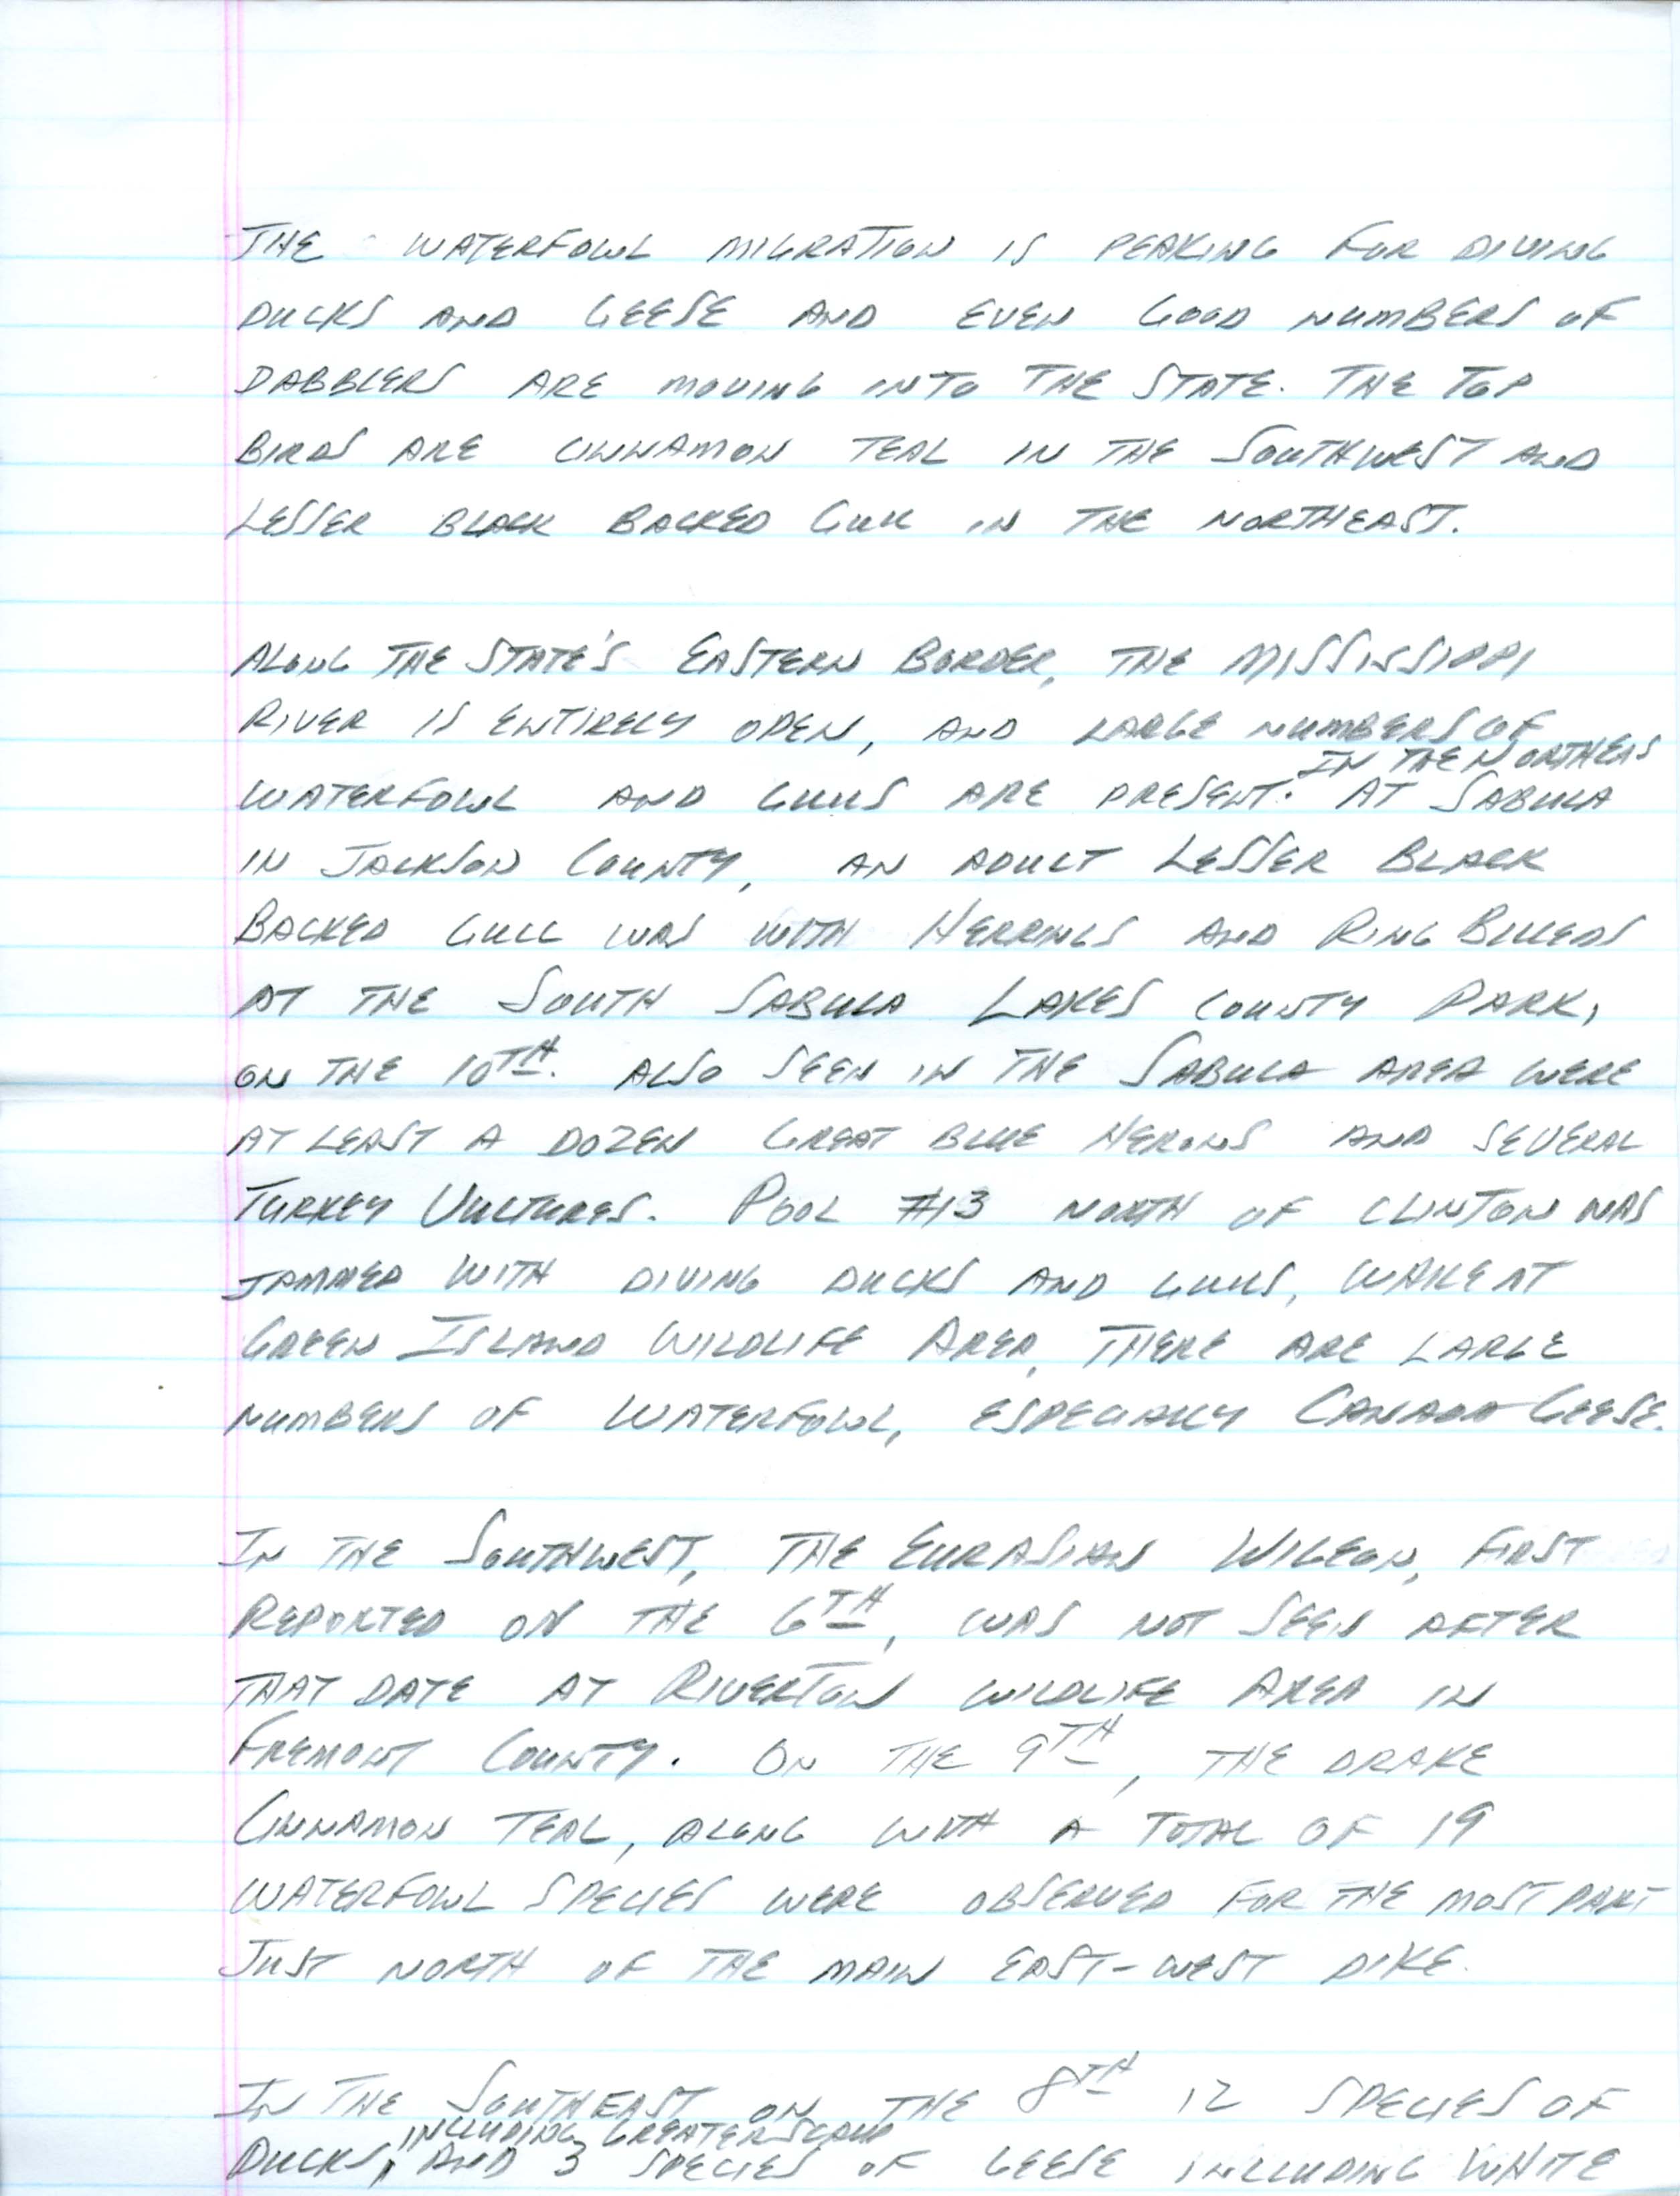 Iowa Birdline update, March 11, 1991 notes